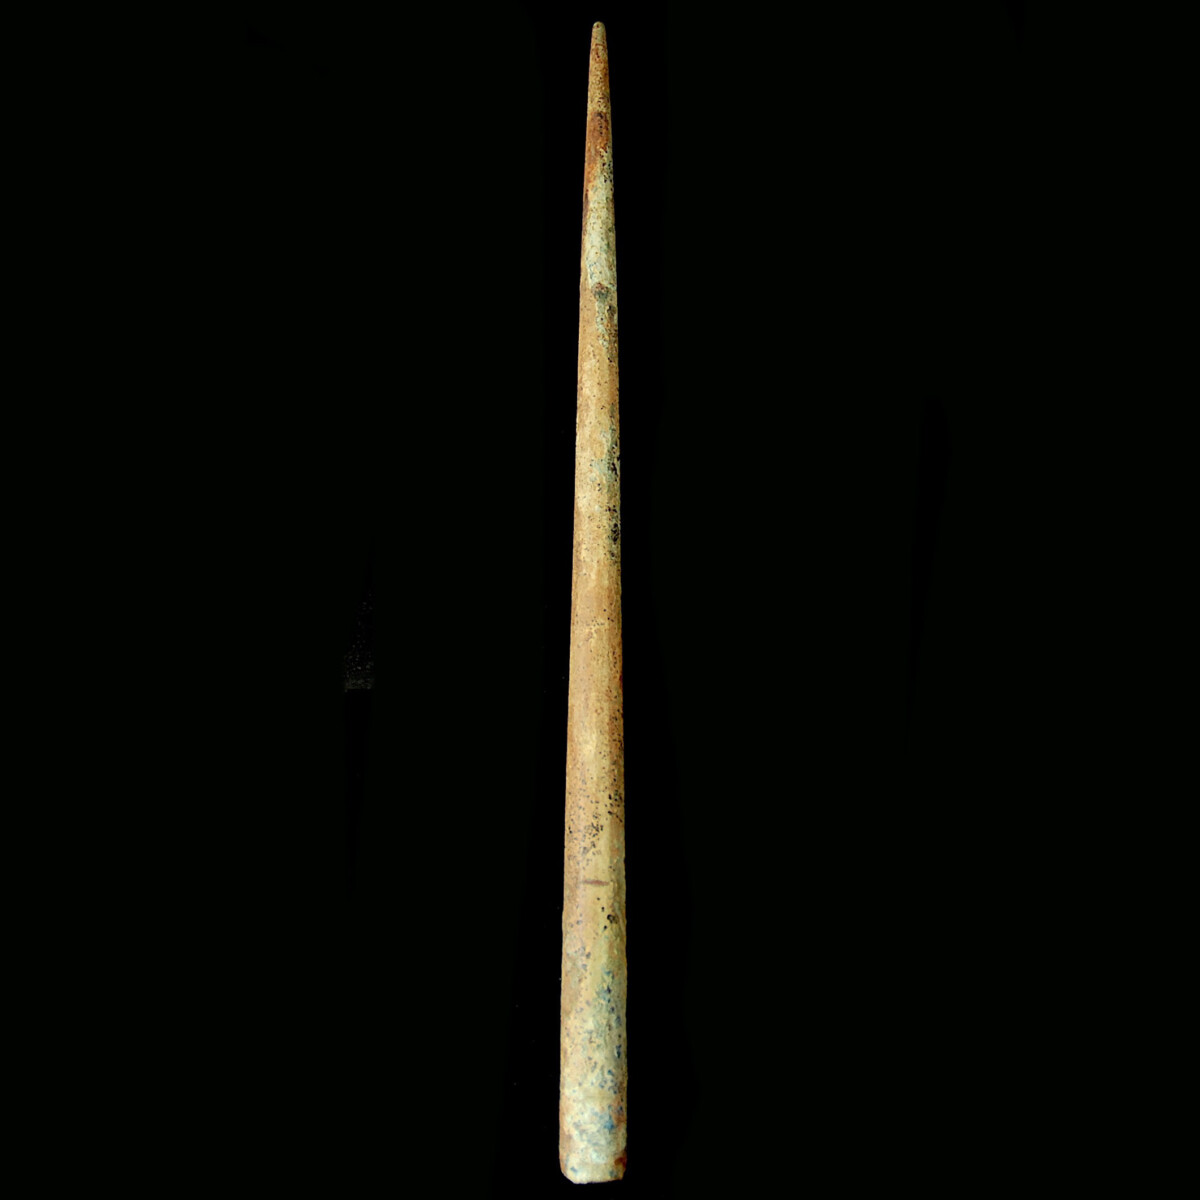 Etruscan spear butt